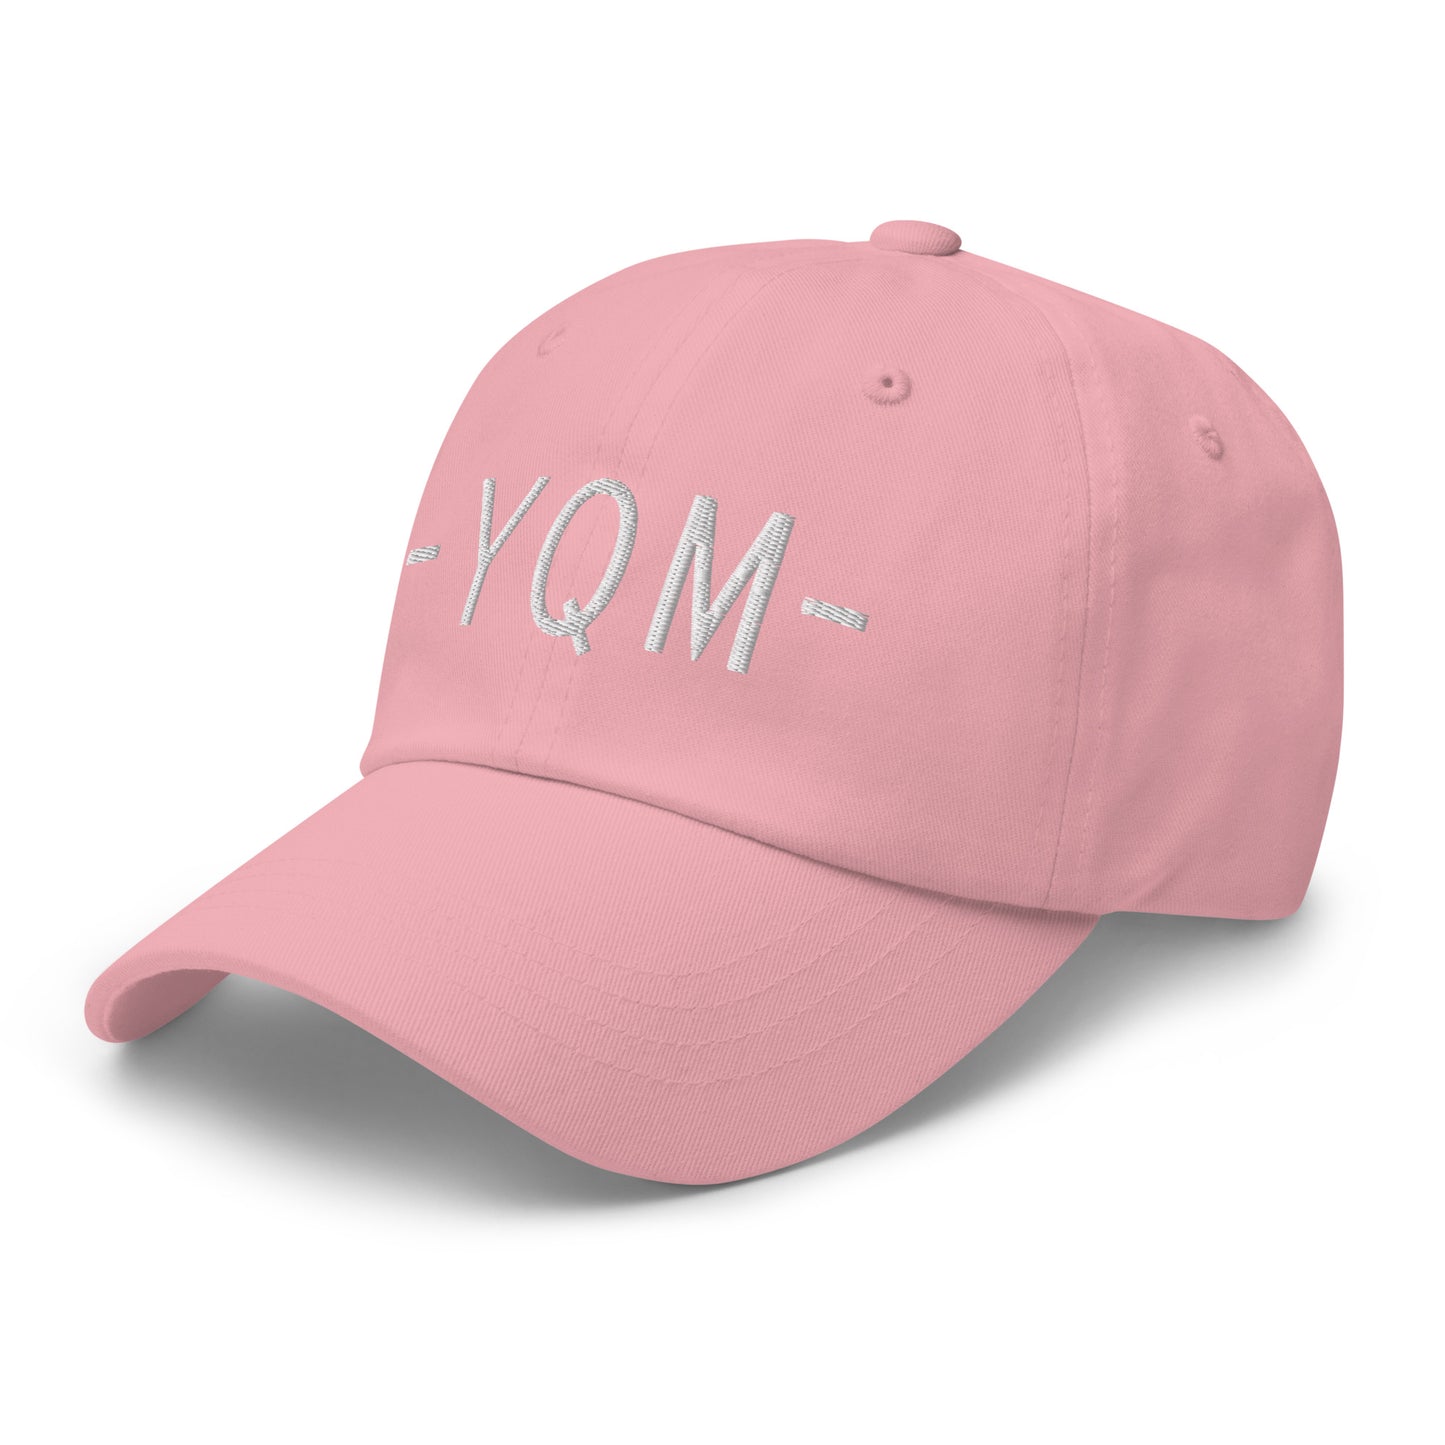 Souvenir Baseball Cap - White • YQM Moncton • YHM Designs - Image 26